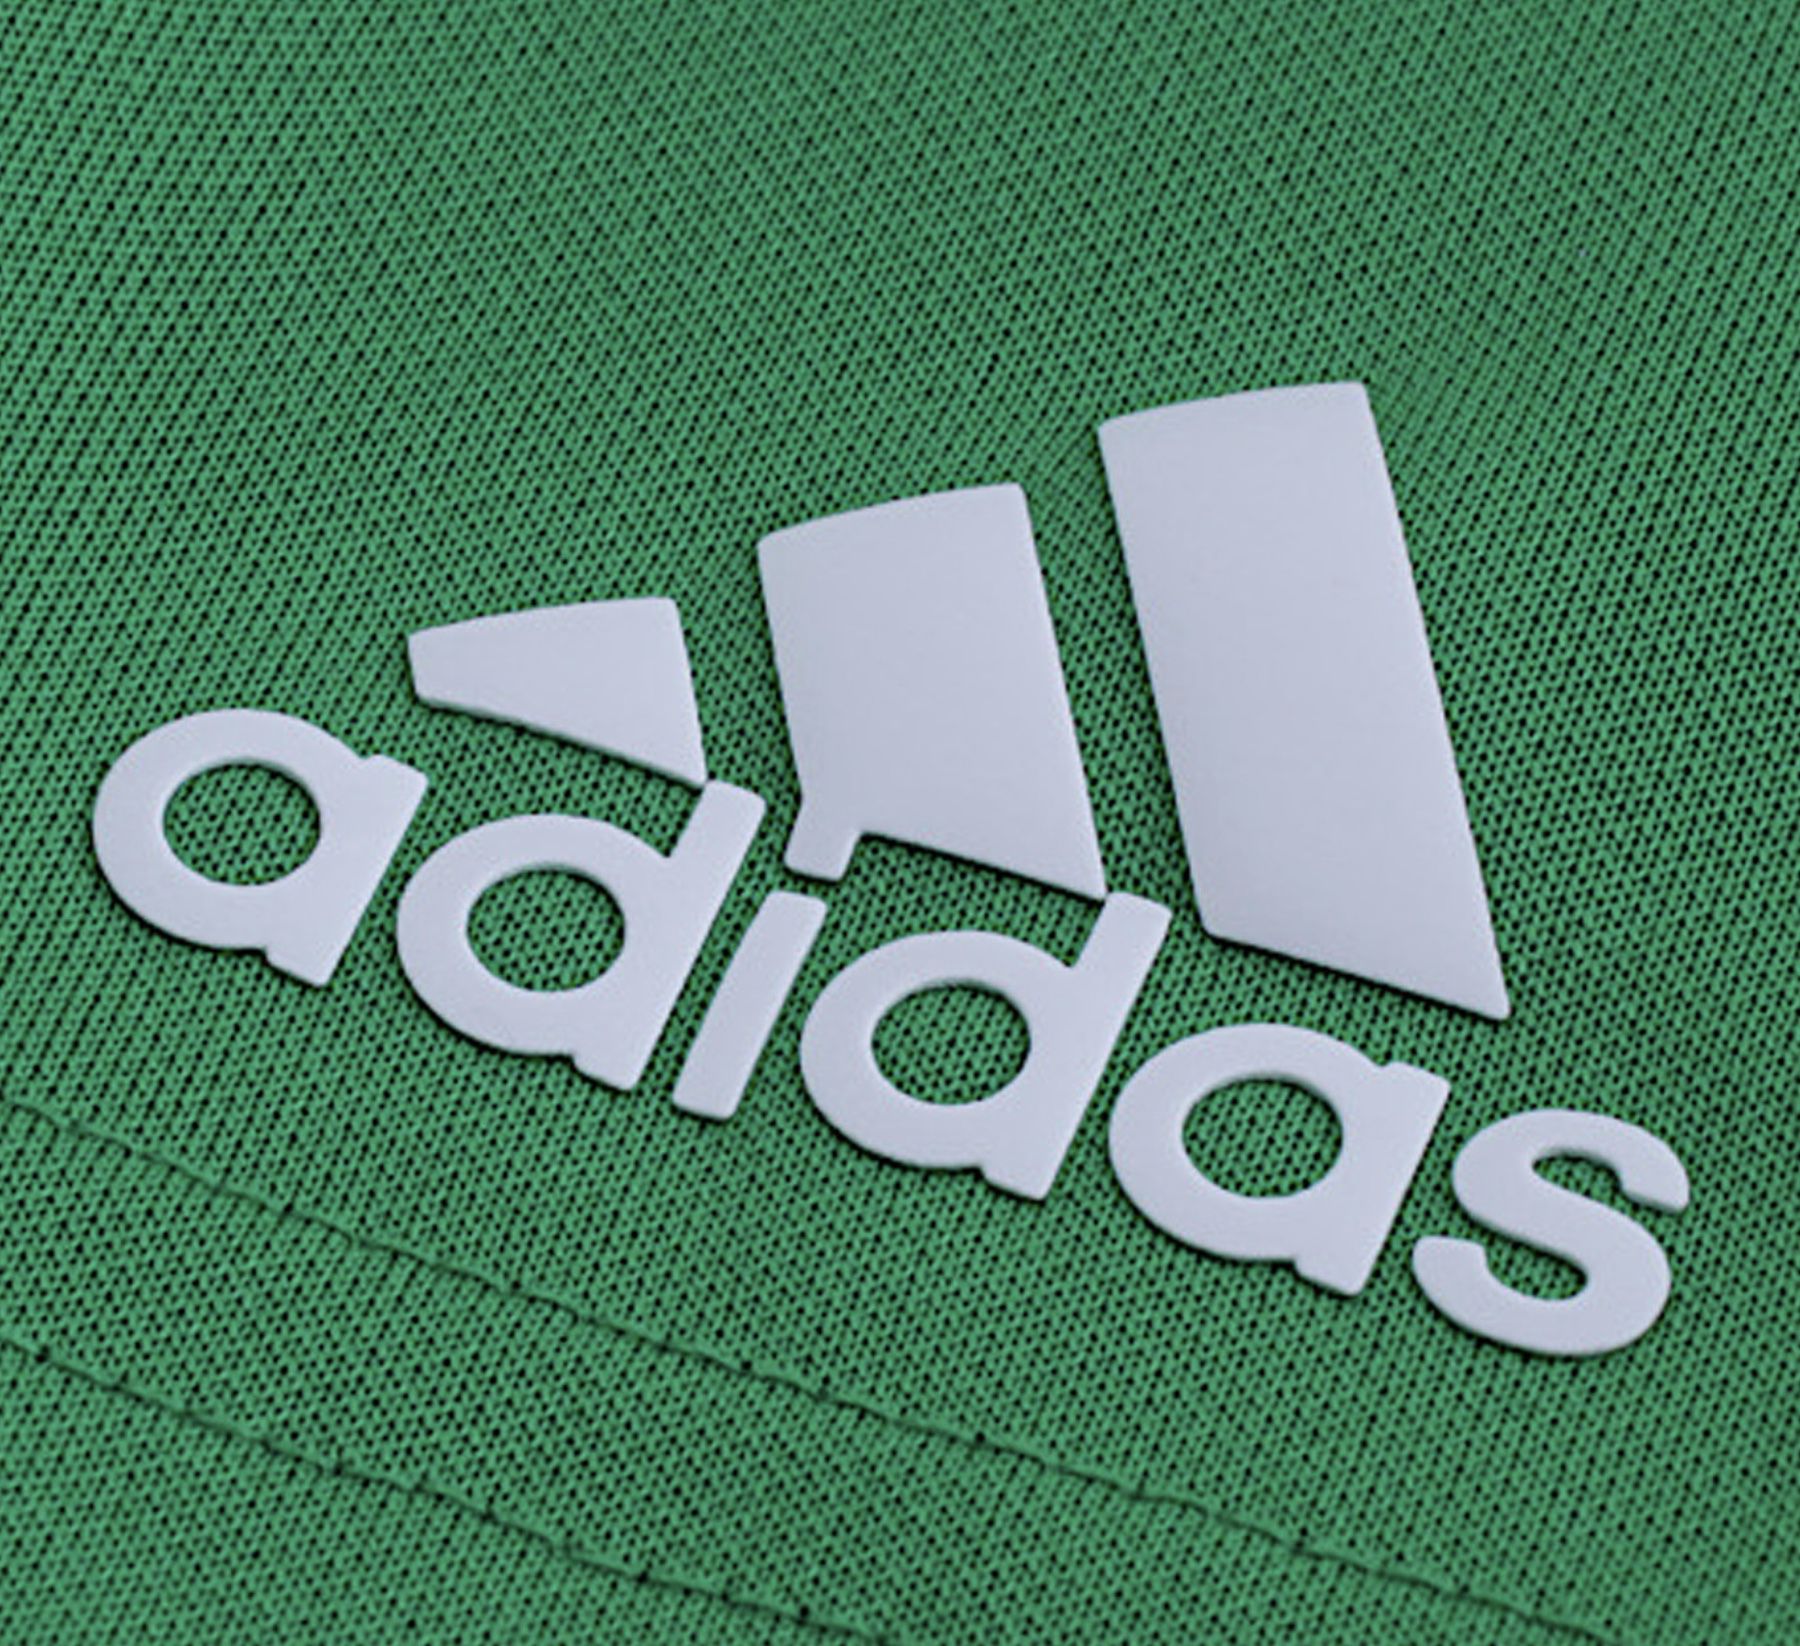 2x adidas Golf Poloshirt in Grün mit UV Schutzfaktor 50+ für 29,98€ (statt 70€)